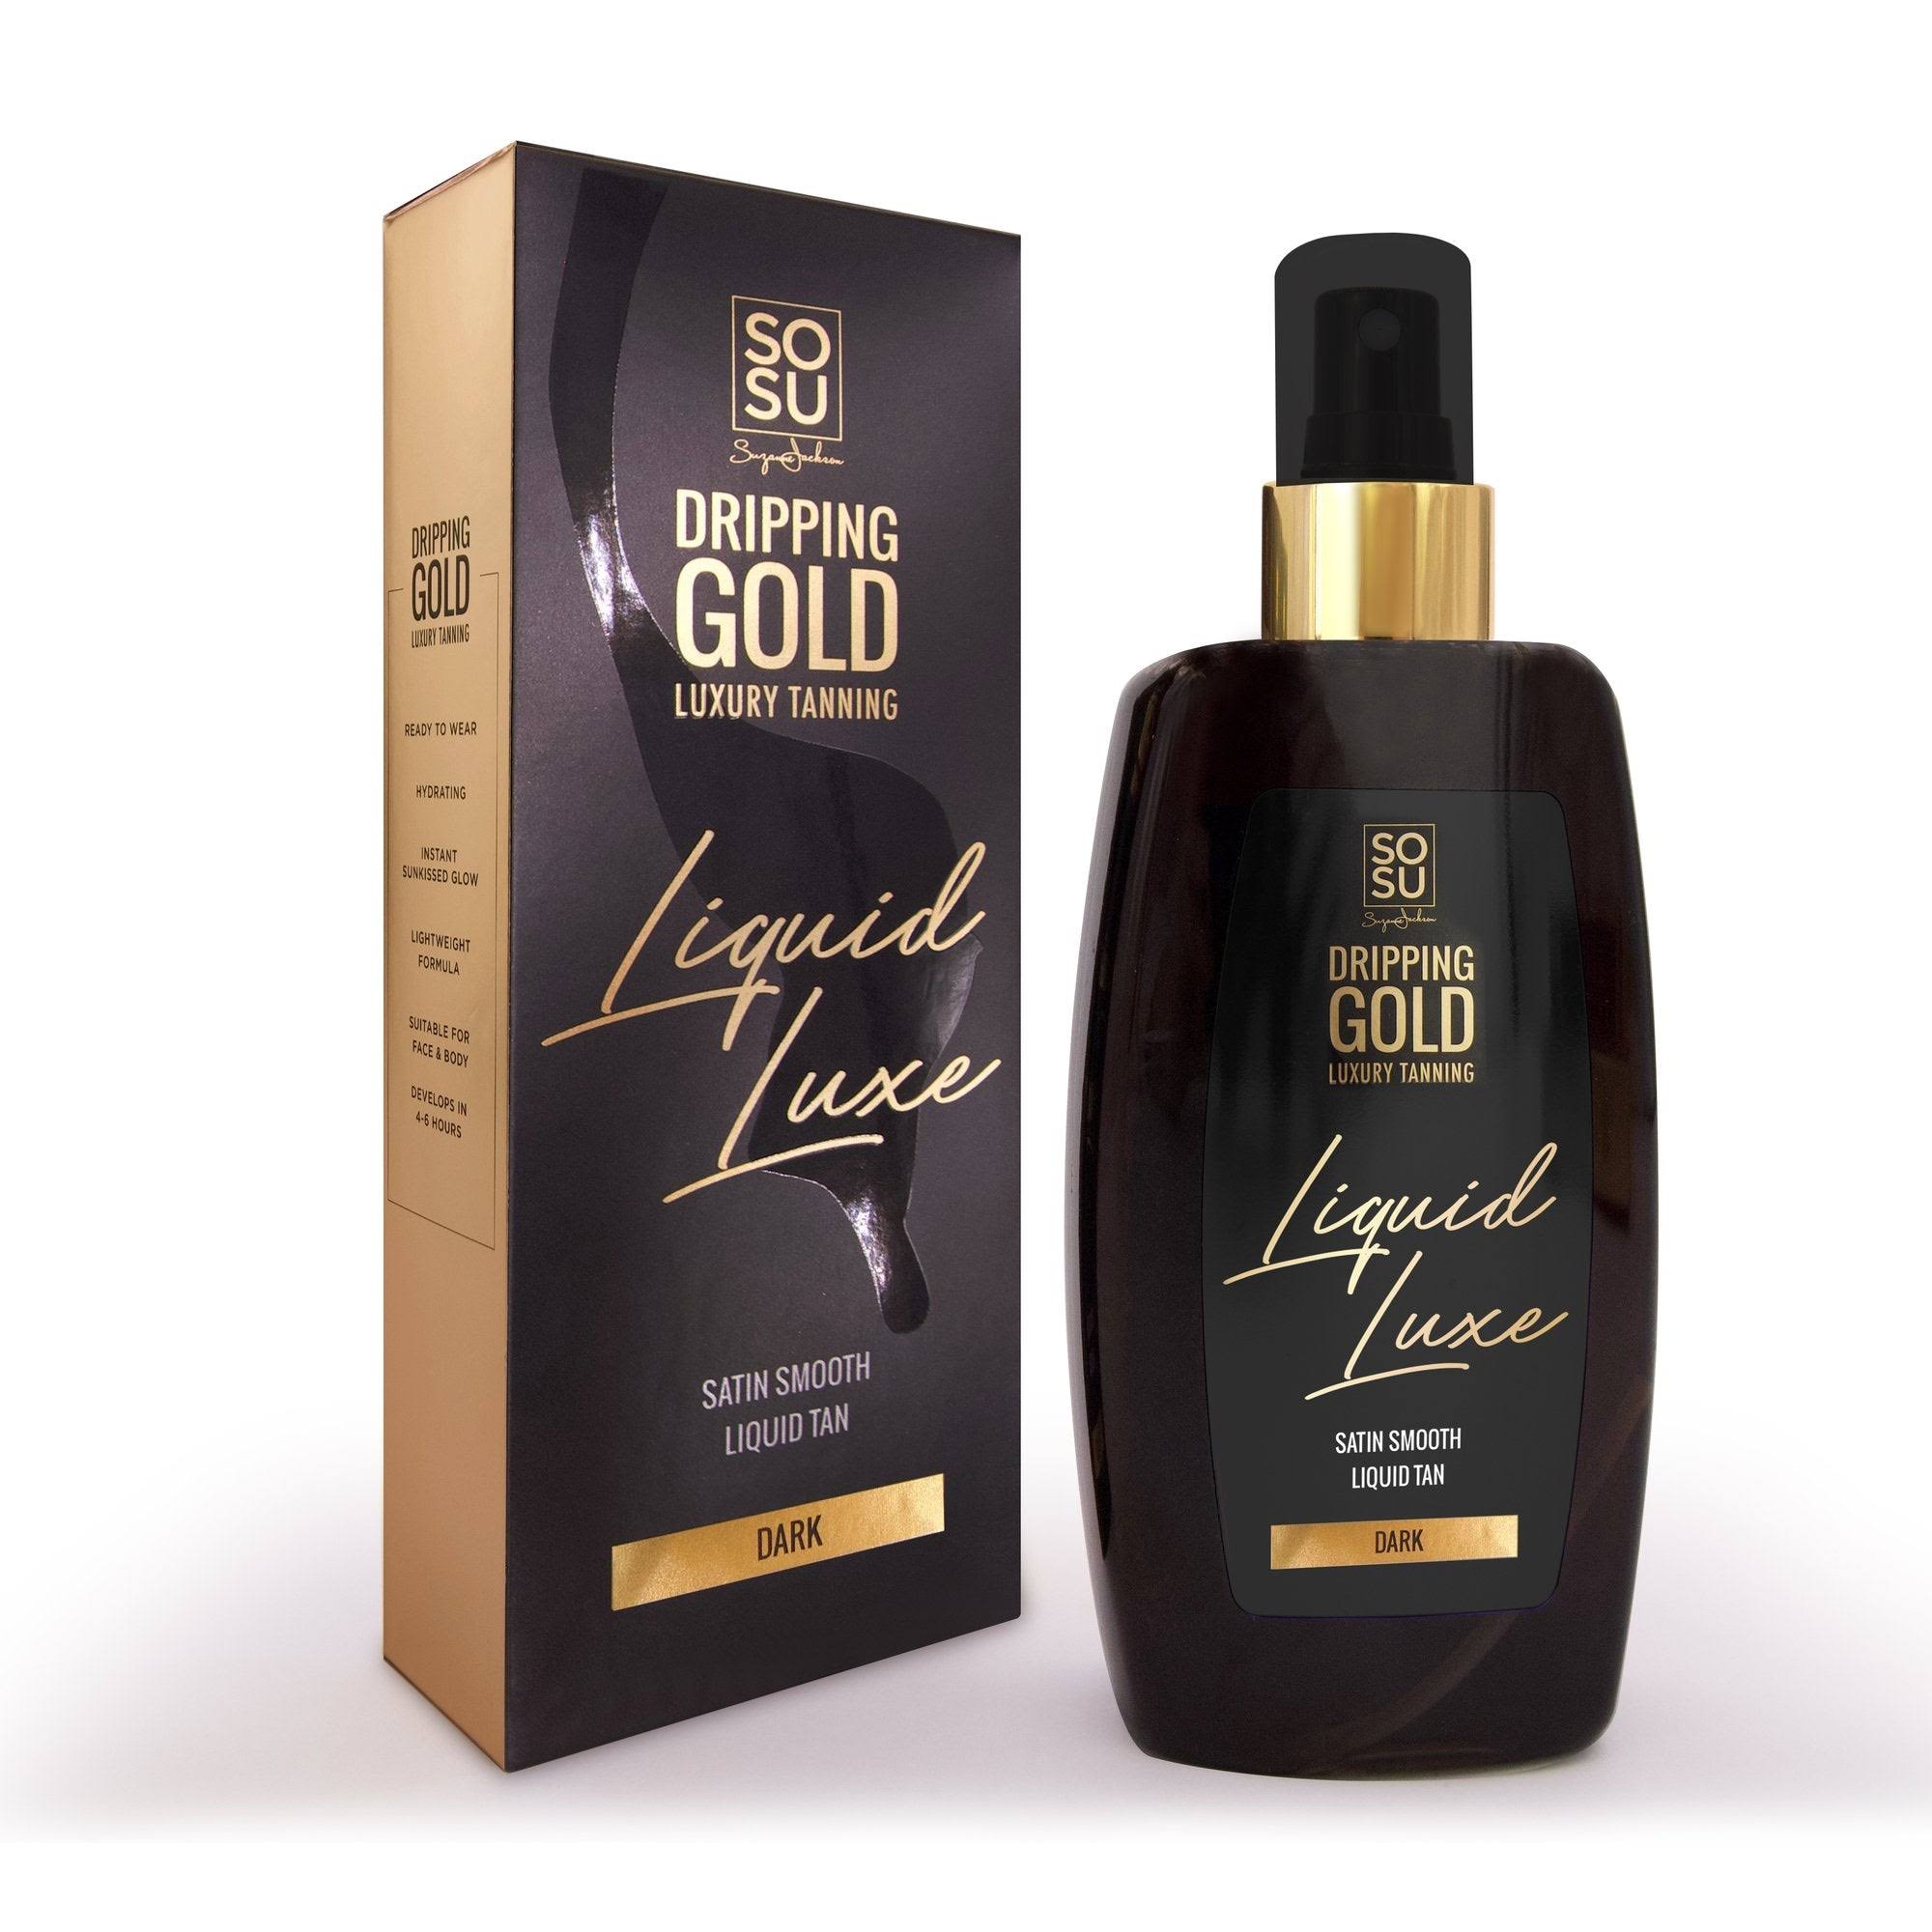 SoSu - Dripping Liquid Luxe Dark - Gold